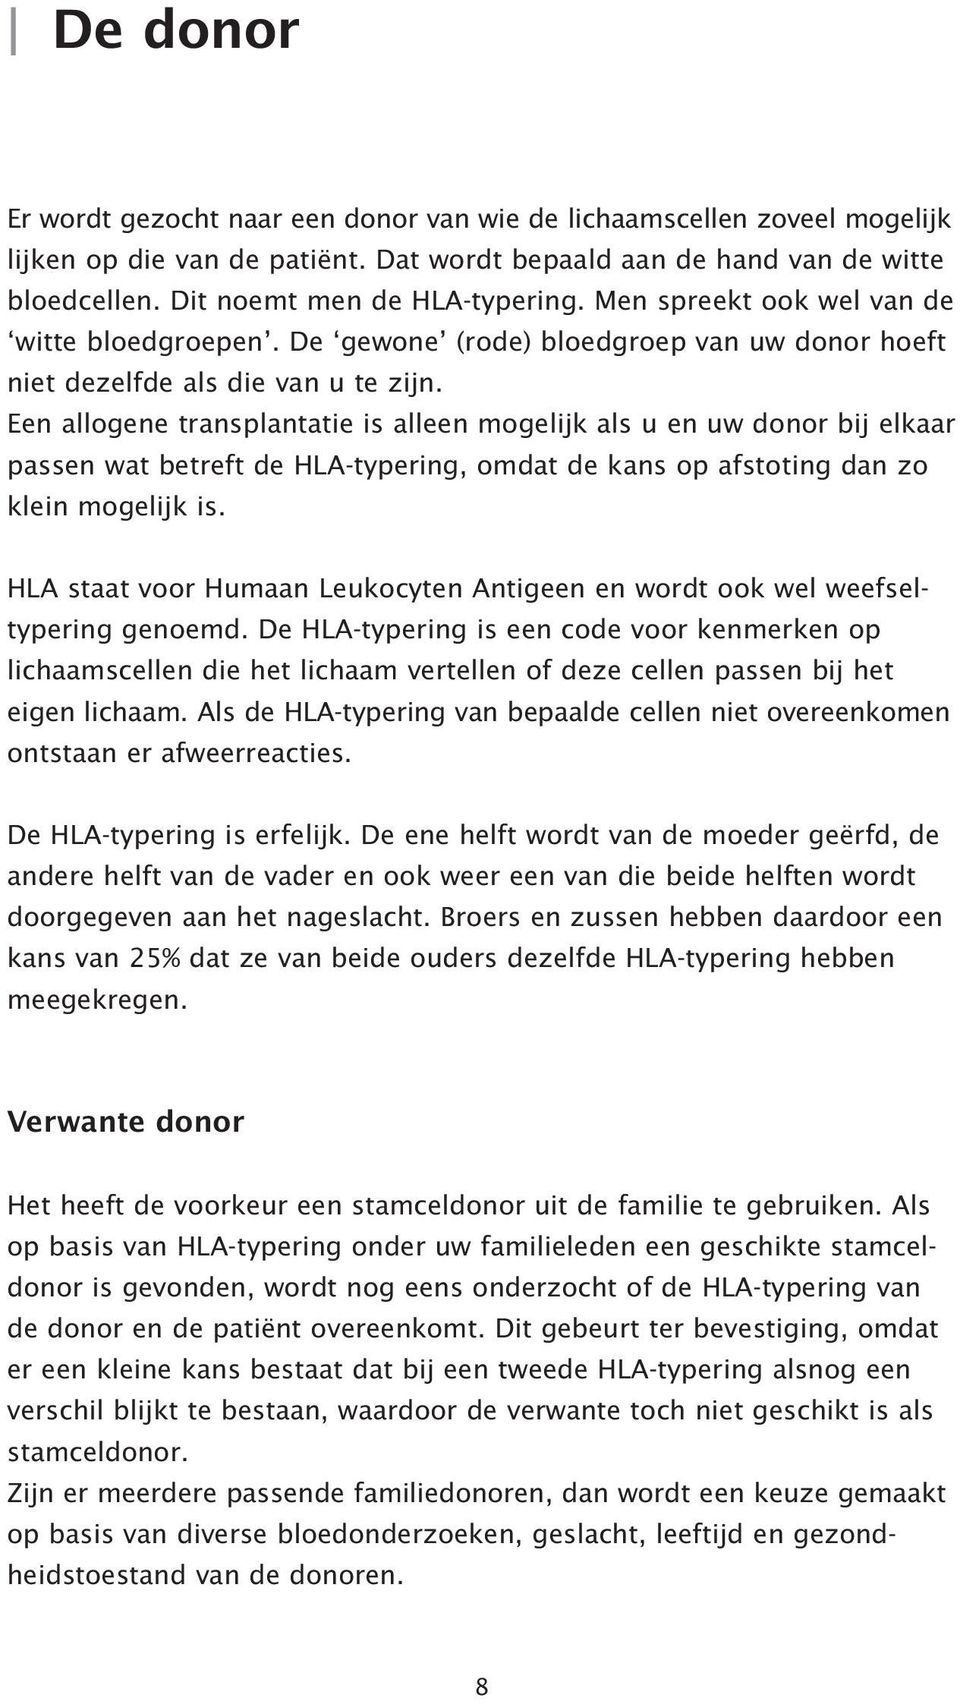 Een allogene transplantatie is alleen mogelijk als u en uw donor bij elkaar passen wat betreft de HLA-typering, omdat de kans op afstoting dan zo klein mogelijk is.